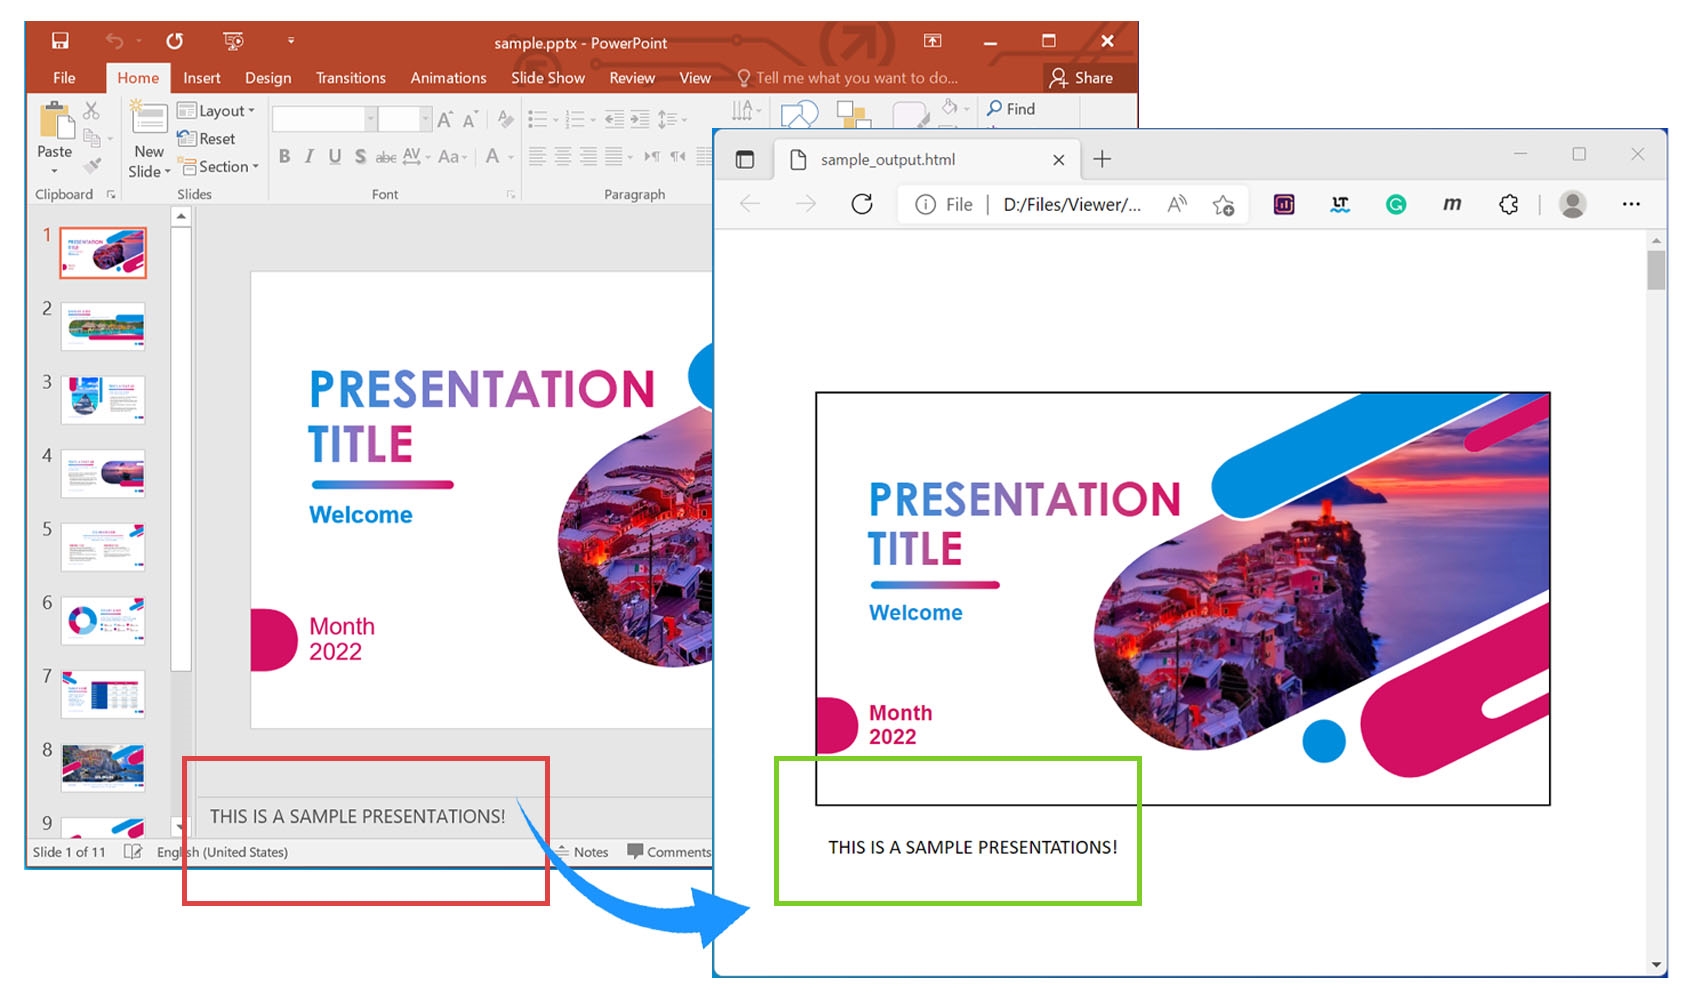 Eseguire il rendering delle note di presentazione di PowerPoint in HTML utilizzando C#.